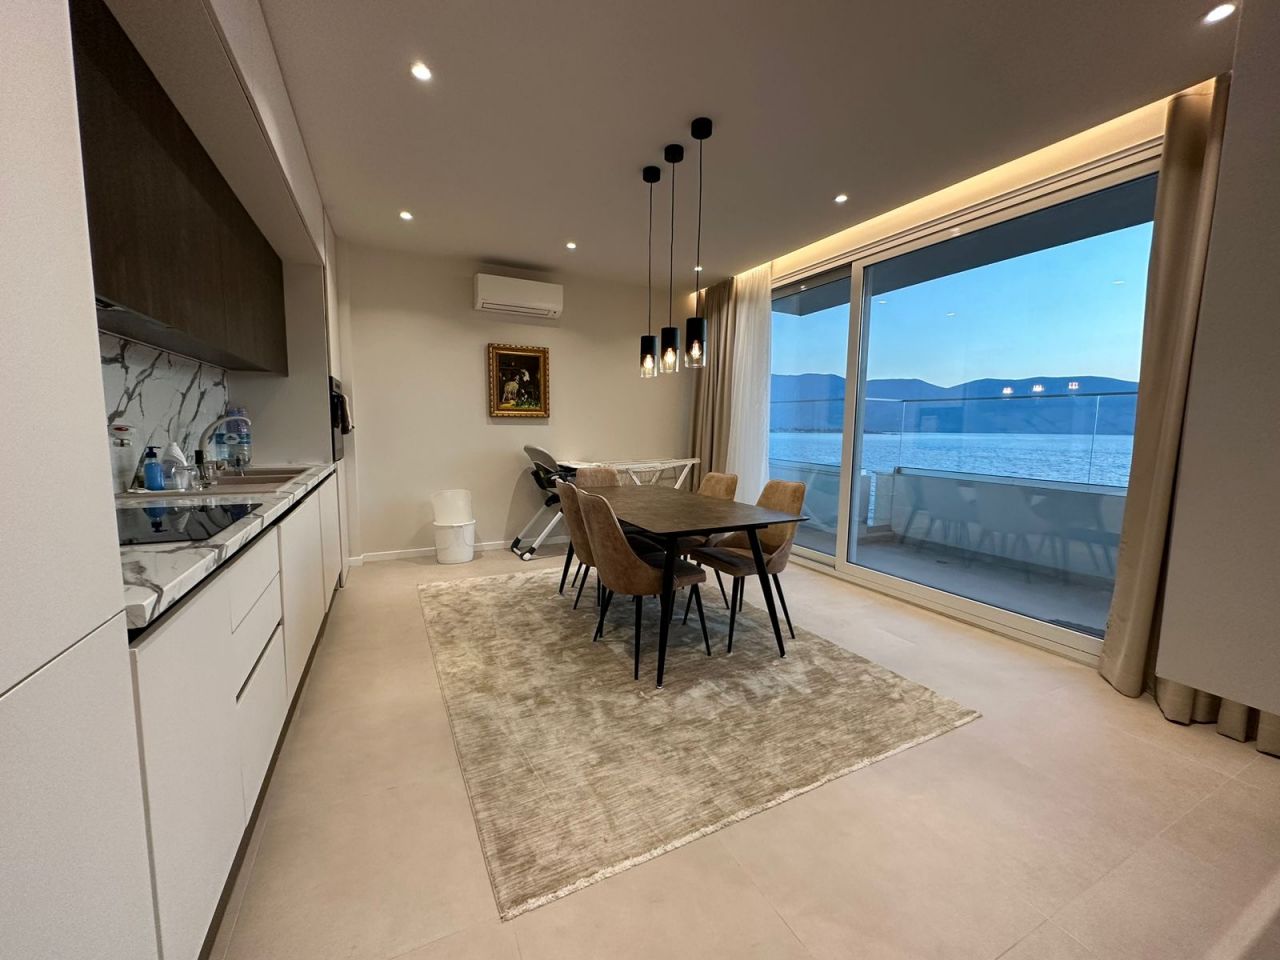 Neue Und Schöne Wohnung Zum Verkauf InVlore Albanien Mit Herrlichem Meerblick In Gutem Zustand Komplett Möbliert